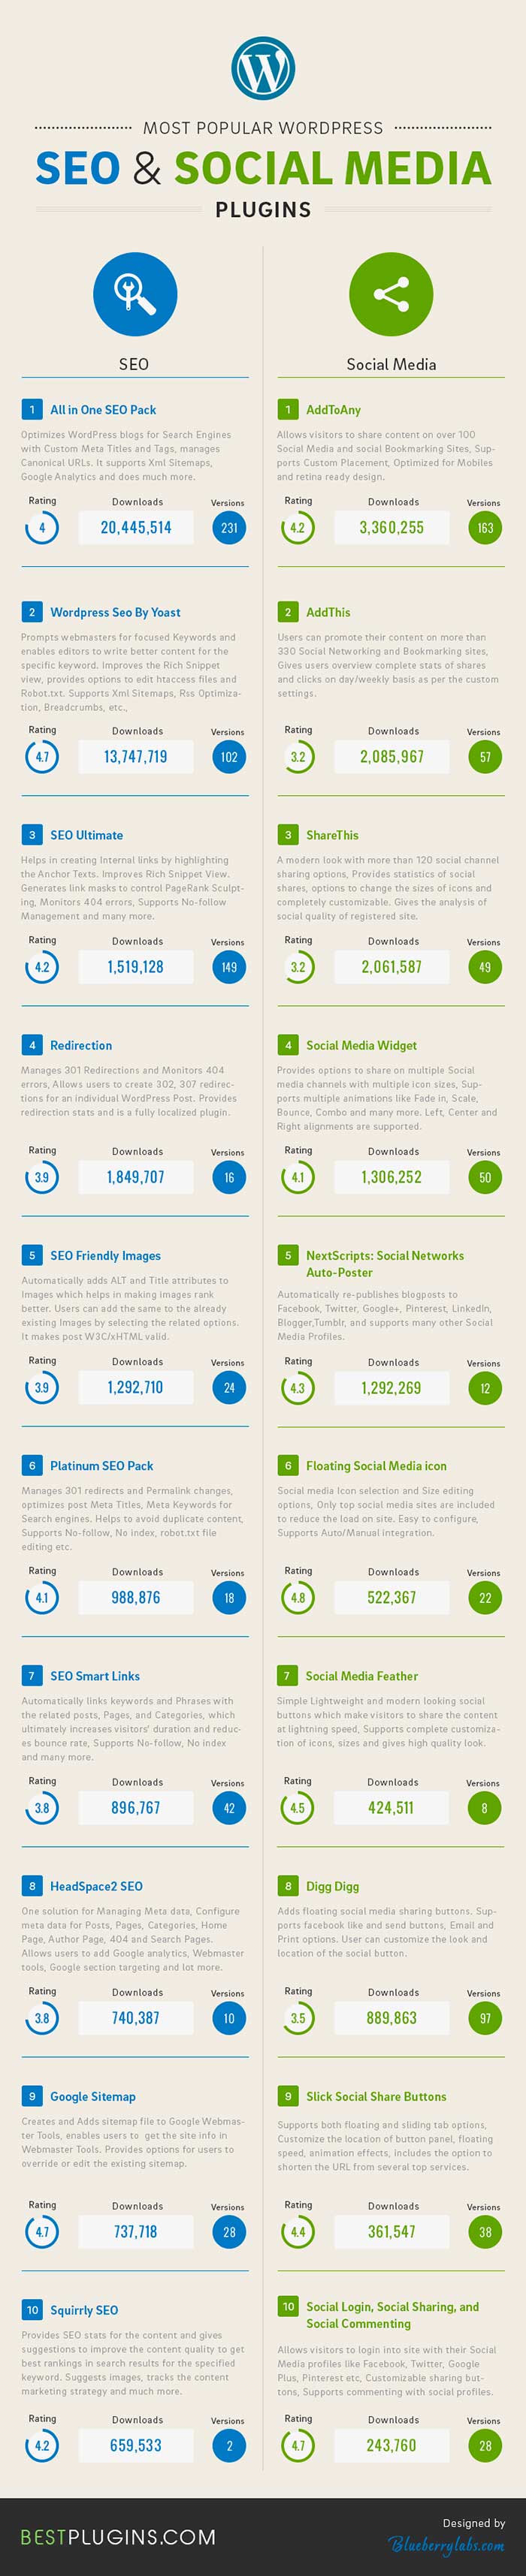 Infografia sobre los 20 plugins wordpress mas populares para SEO y Social Media